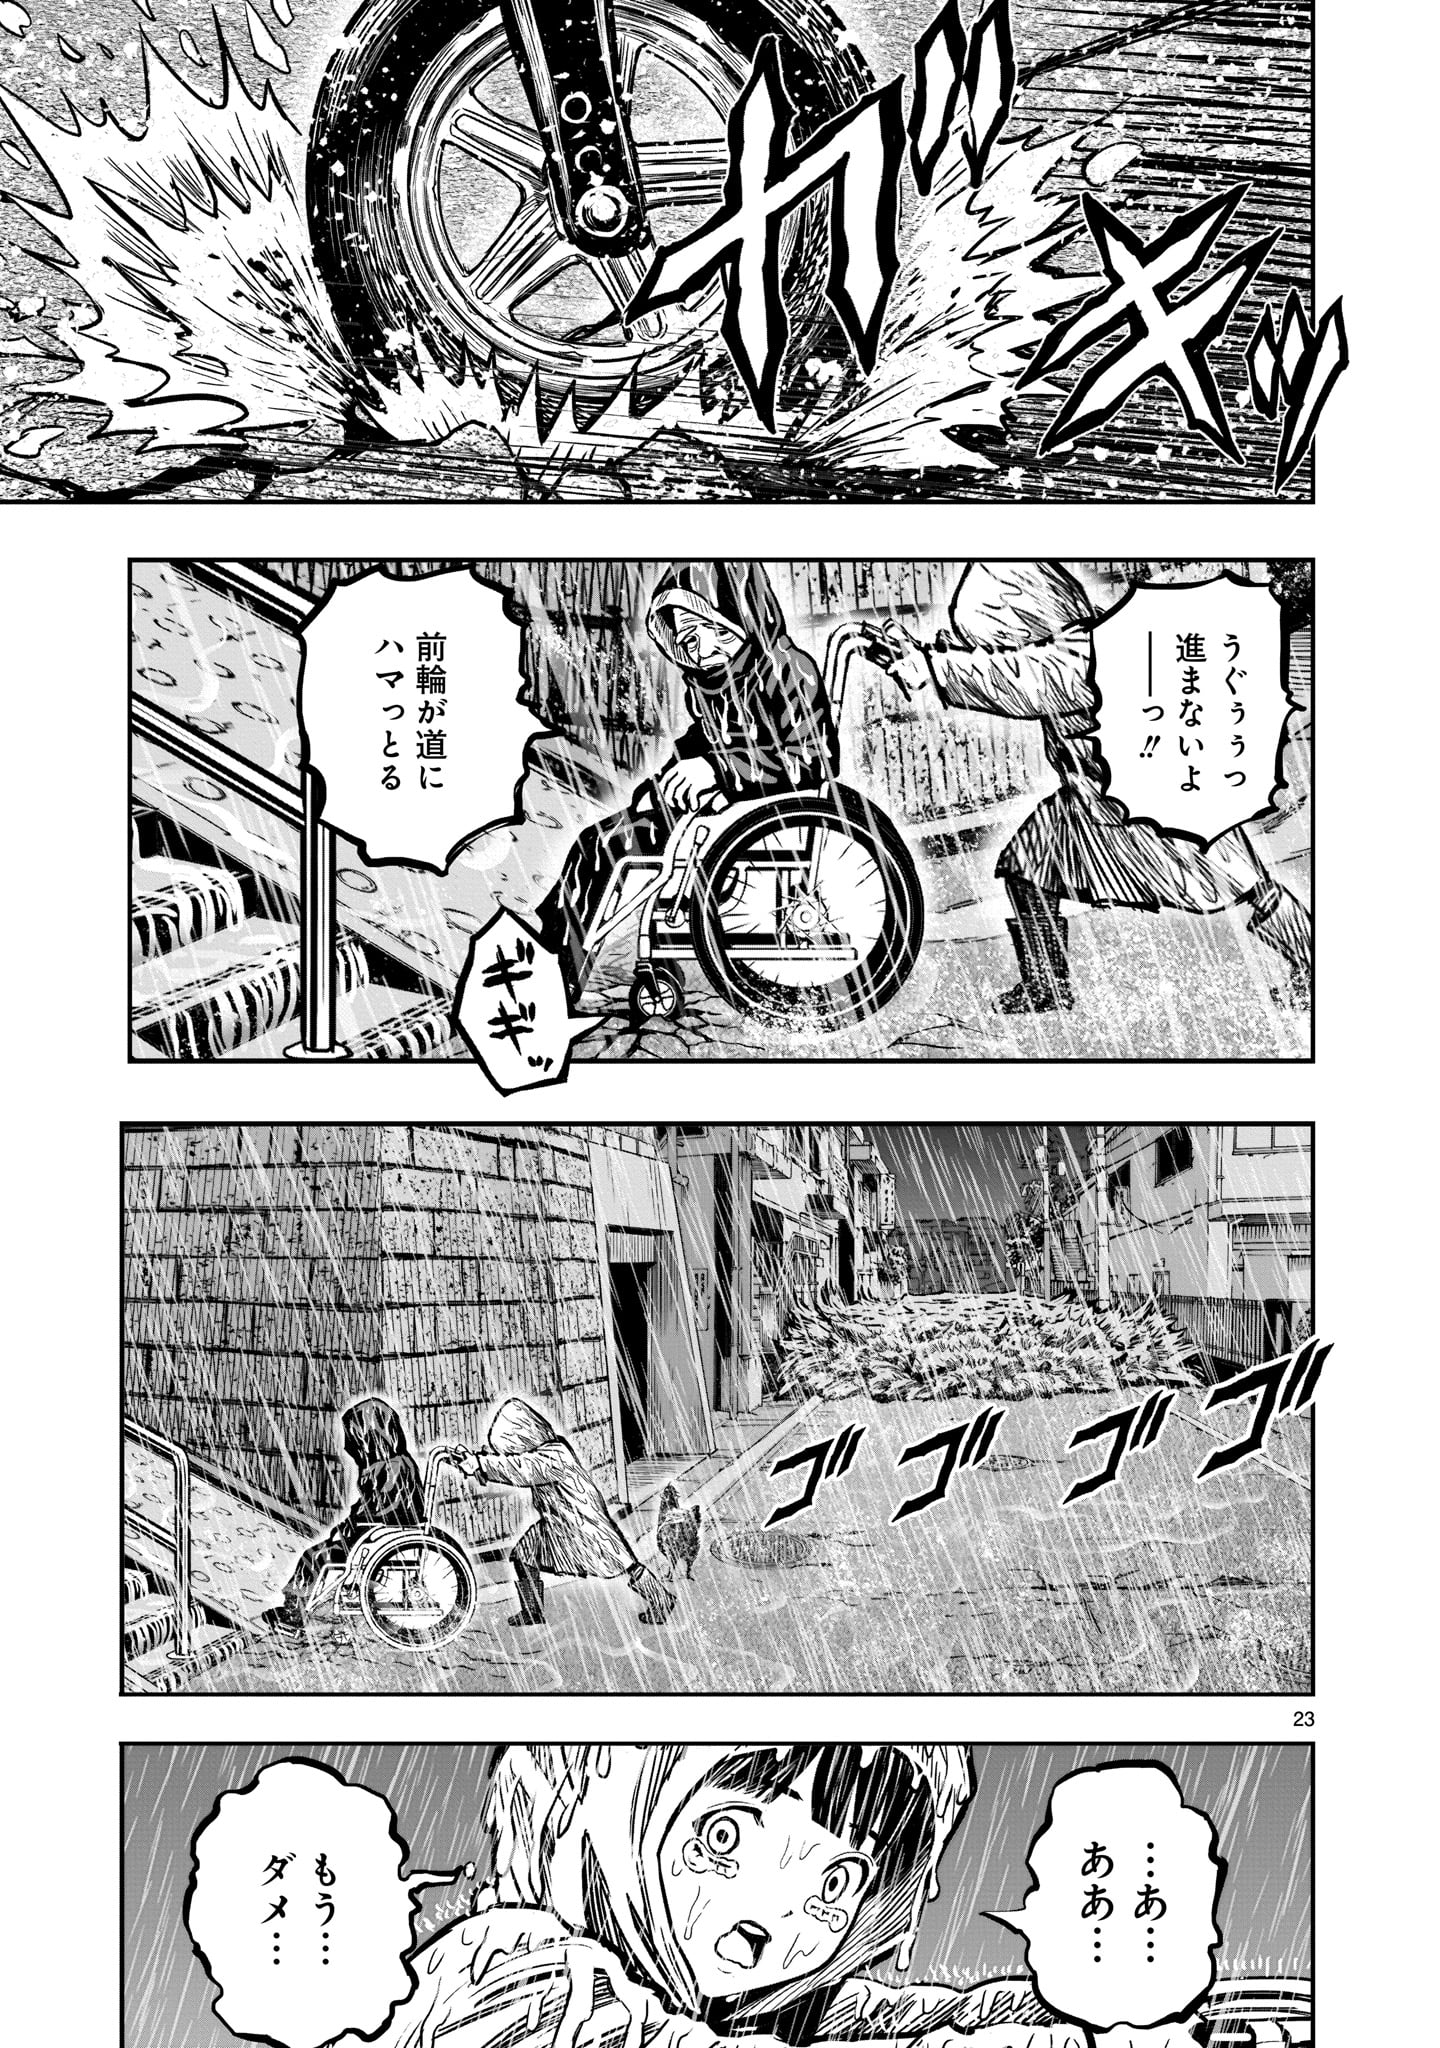 Saint Seiya: Meiou Iden – Dark Wing 第13話 - Page 23